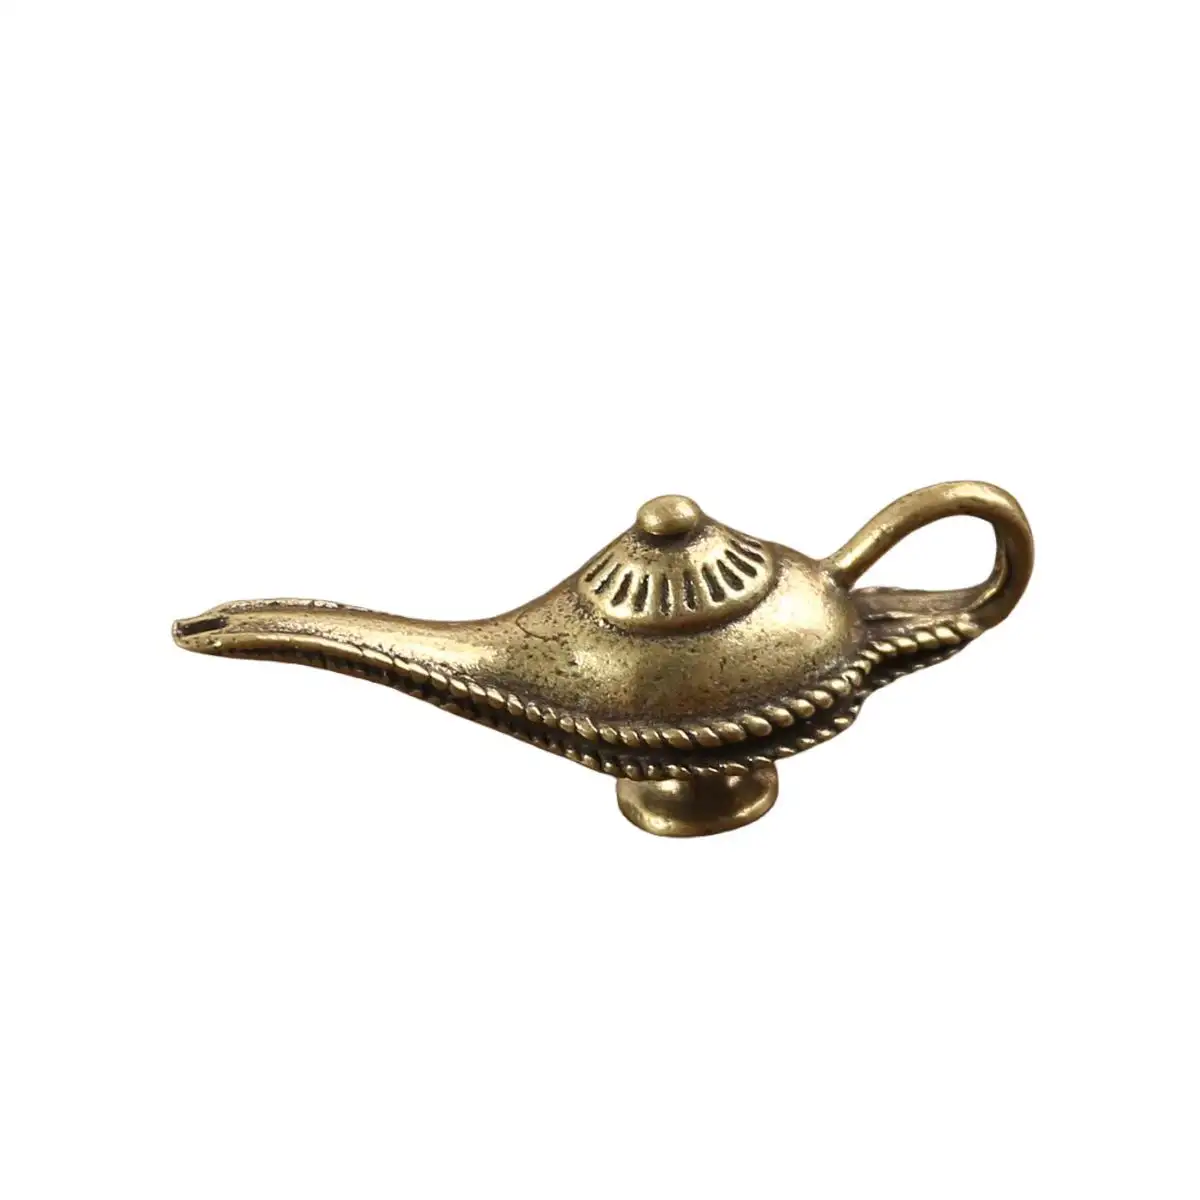 Commercio all'ingrosso artigianato in metallo ornamento artigianato lampada di Aladdin ciondolo chiave in metallo